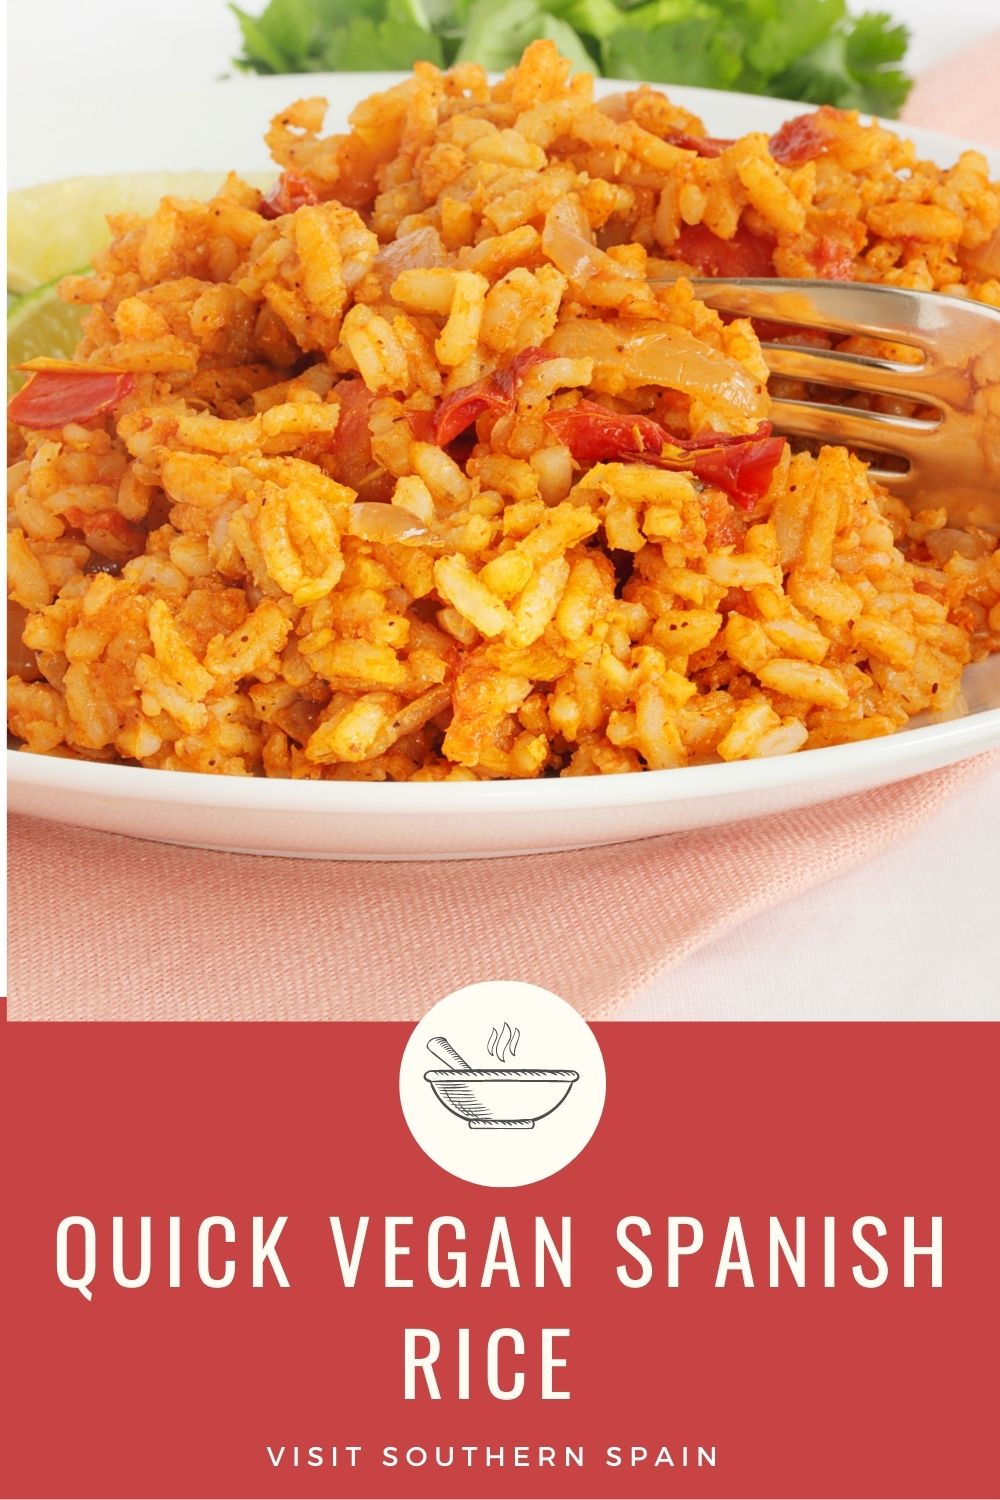 16 - Quick Vegan Spanish Rice Recipe